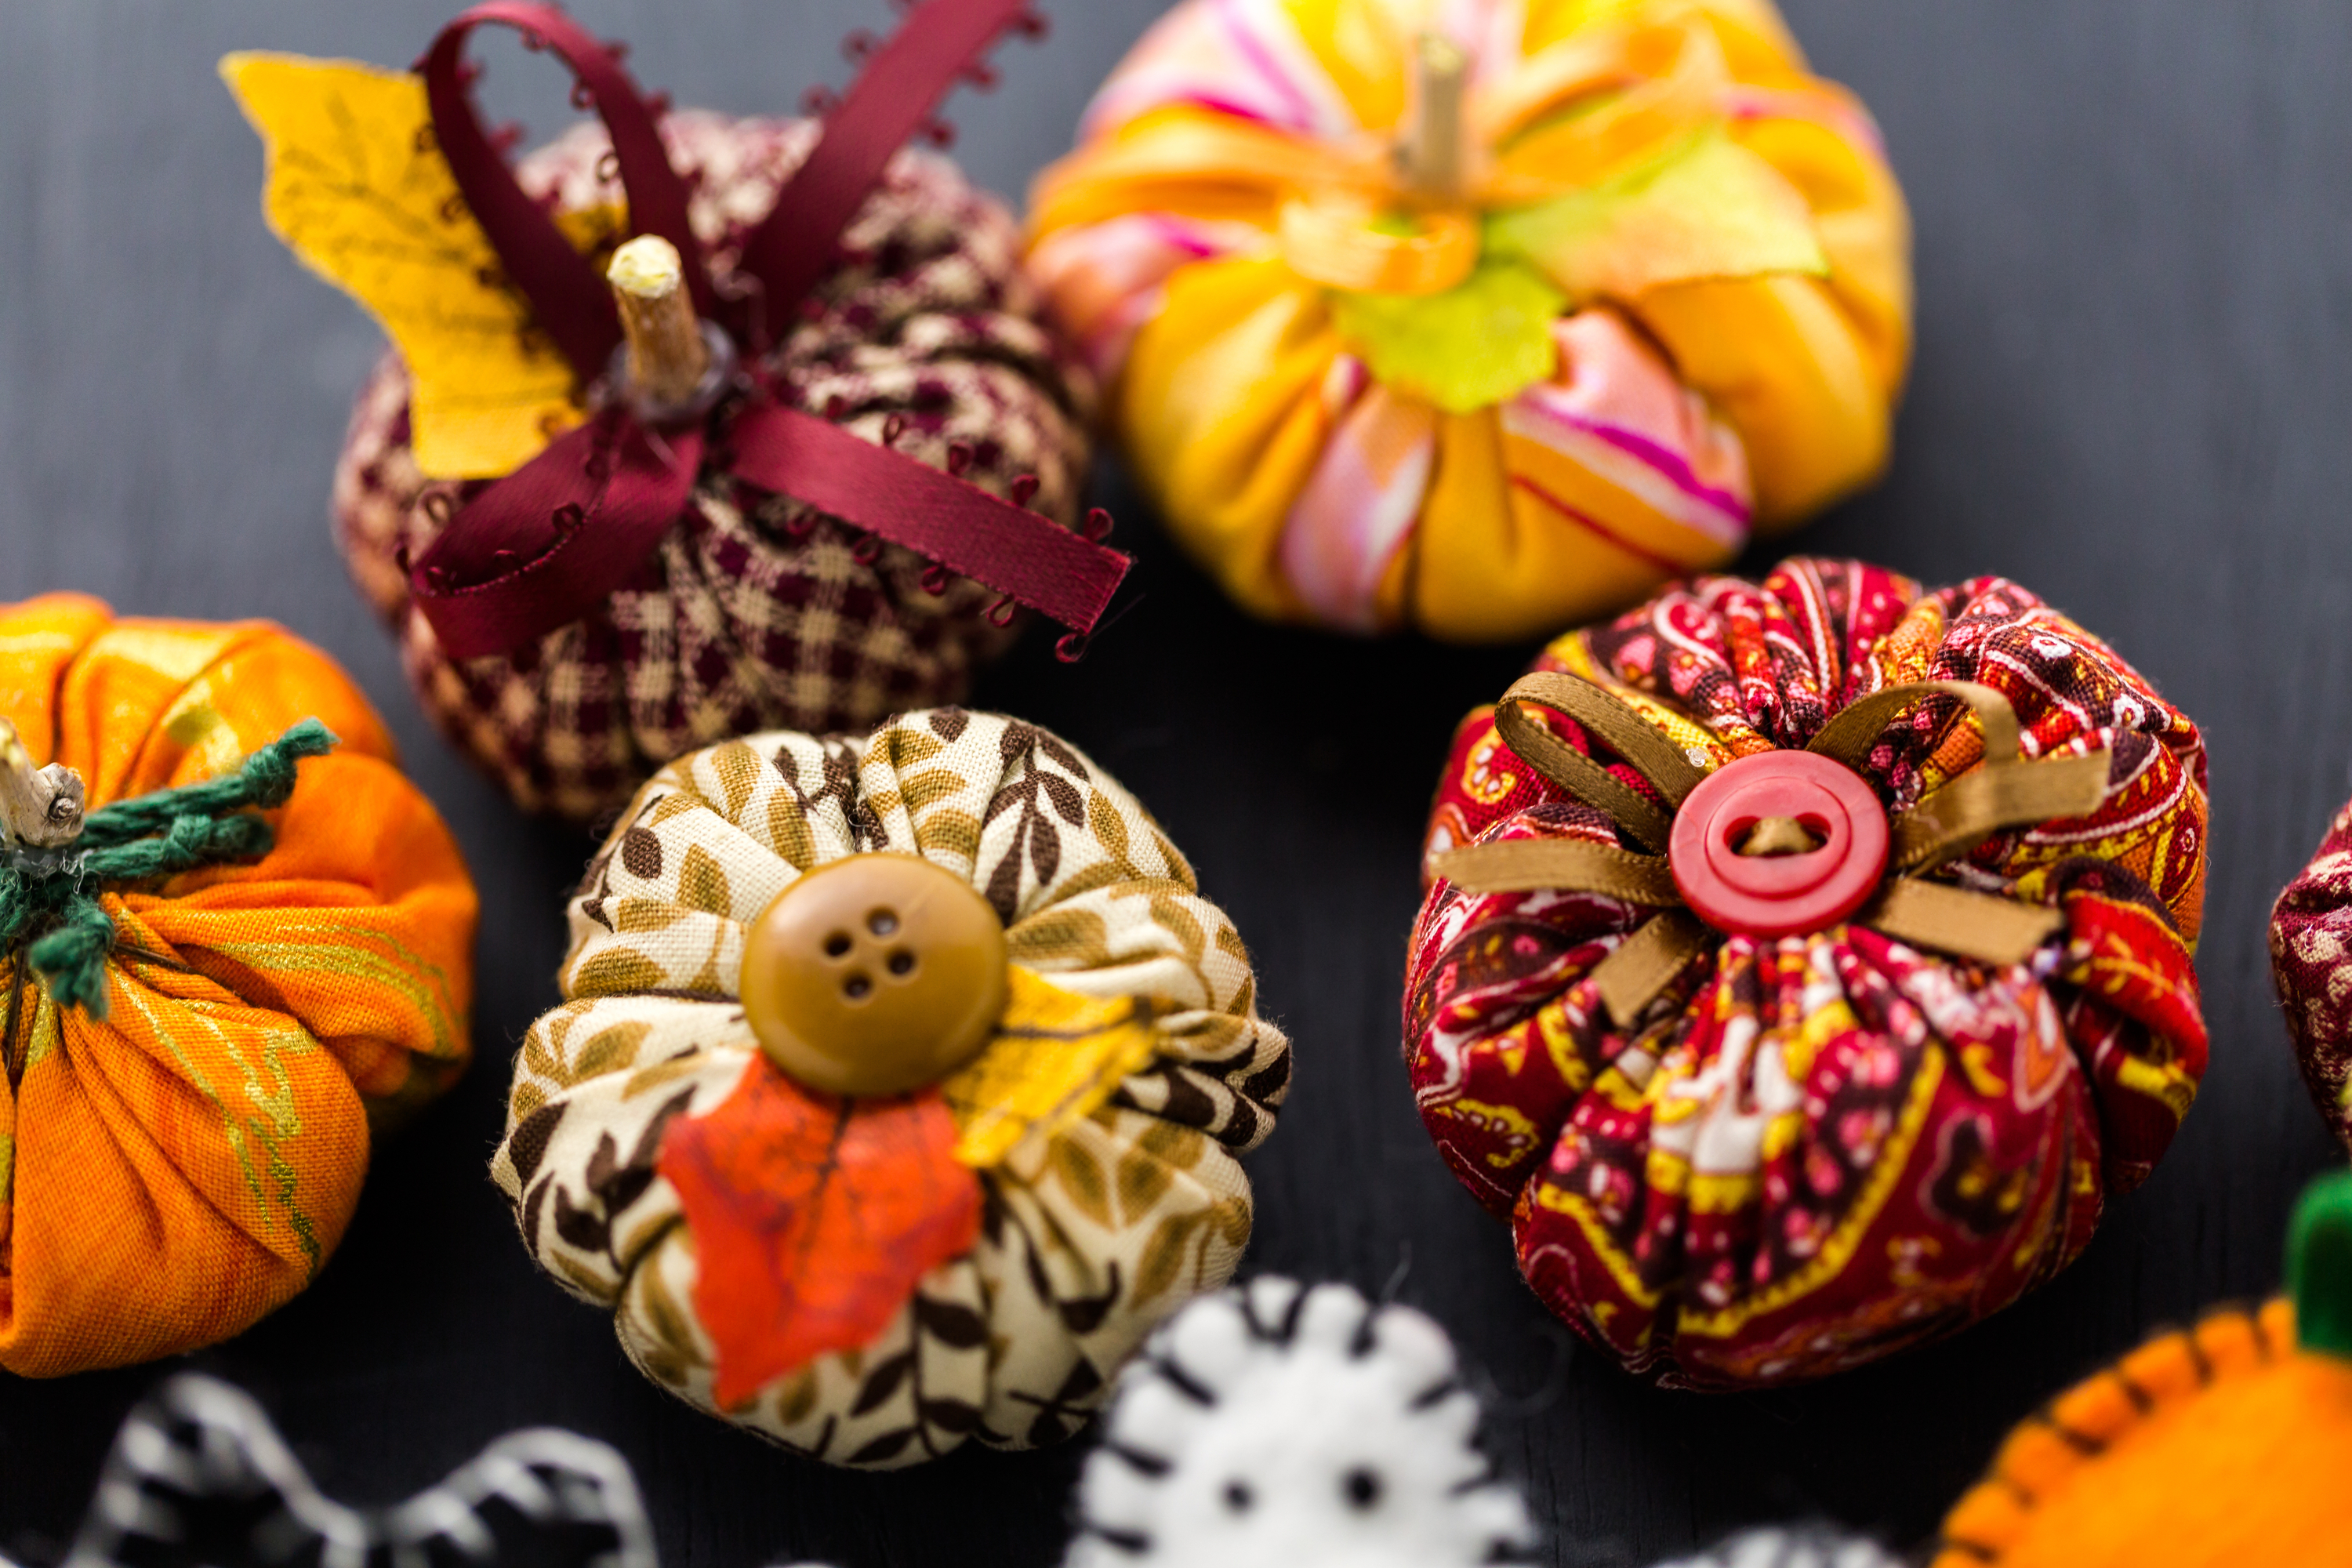 diy pumpkin crafts | diy crafts | diy | crafts | pumpkins | pumpkin crafts | fall crafts 